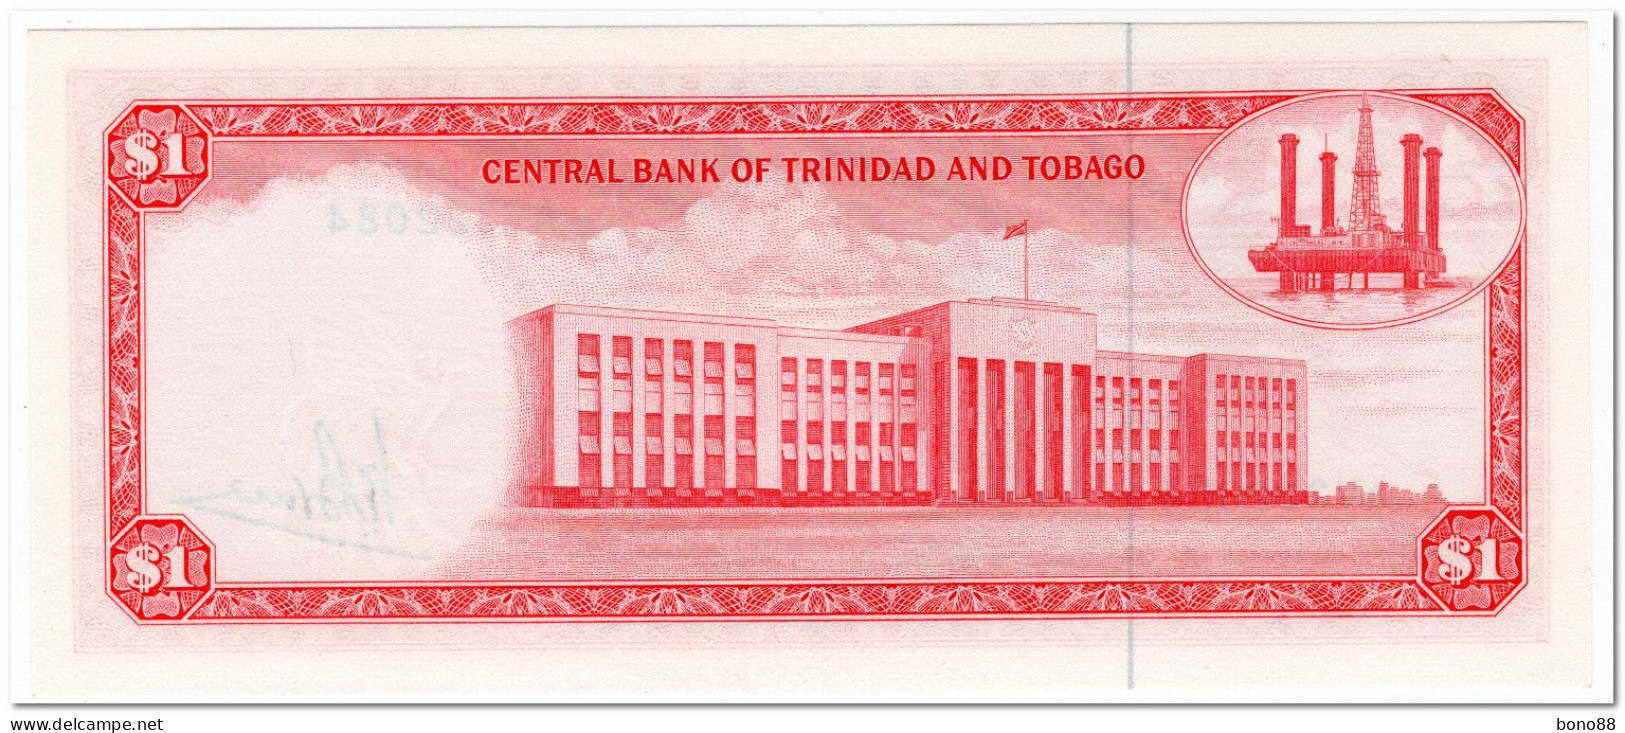 TRINIDAD & TOBAGO,1 DOLLAR,L.1964, (1977) P.30a,UNC - Trinité & Tobago